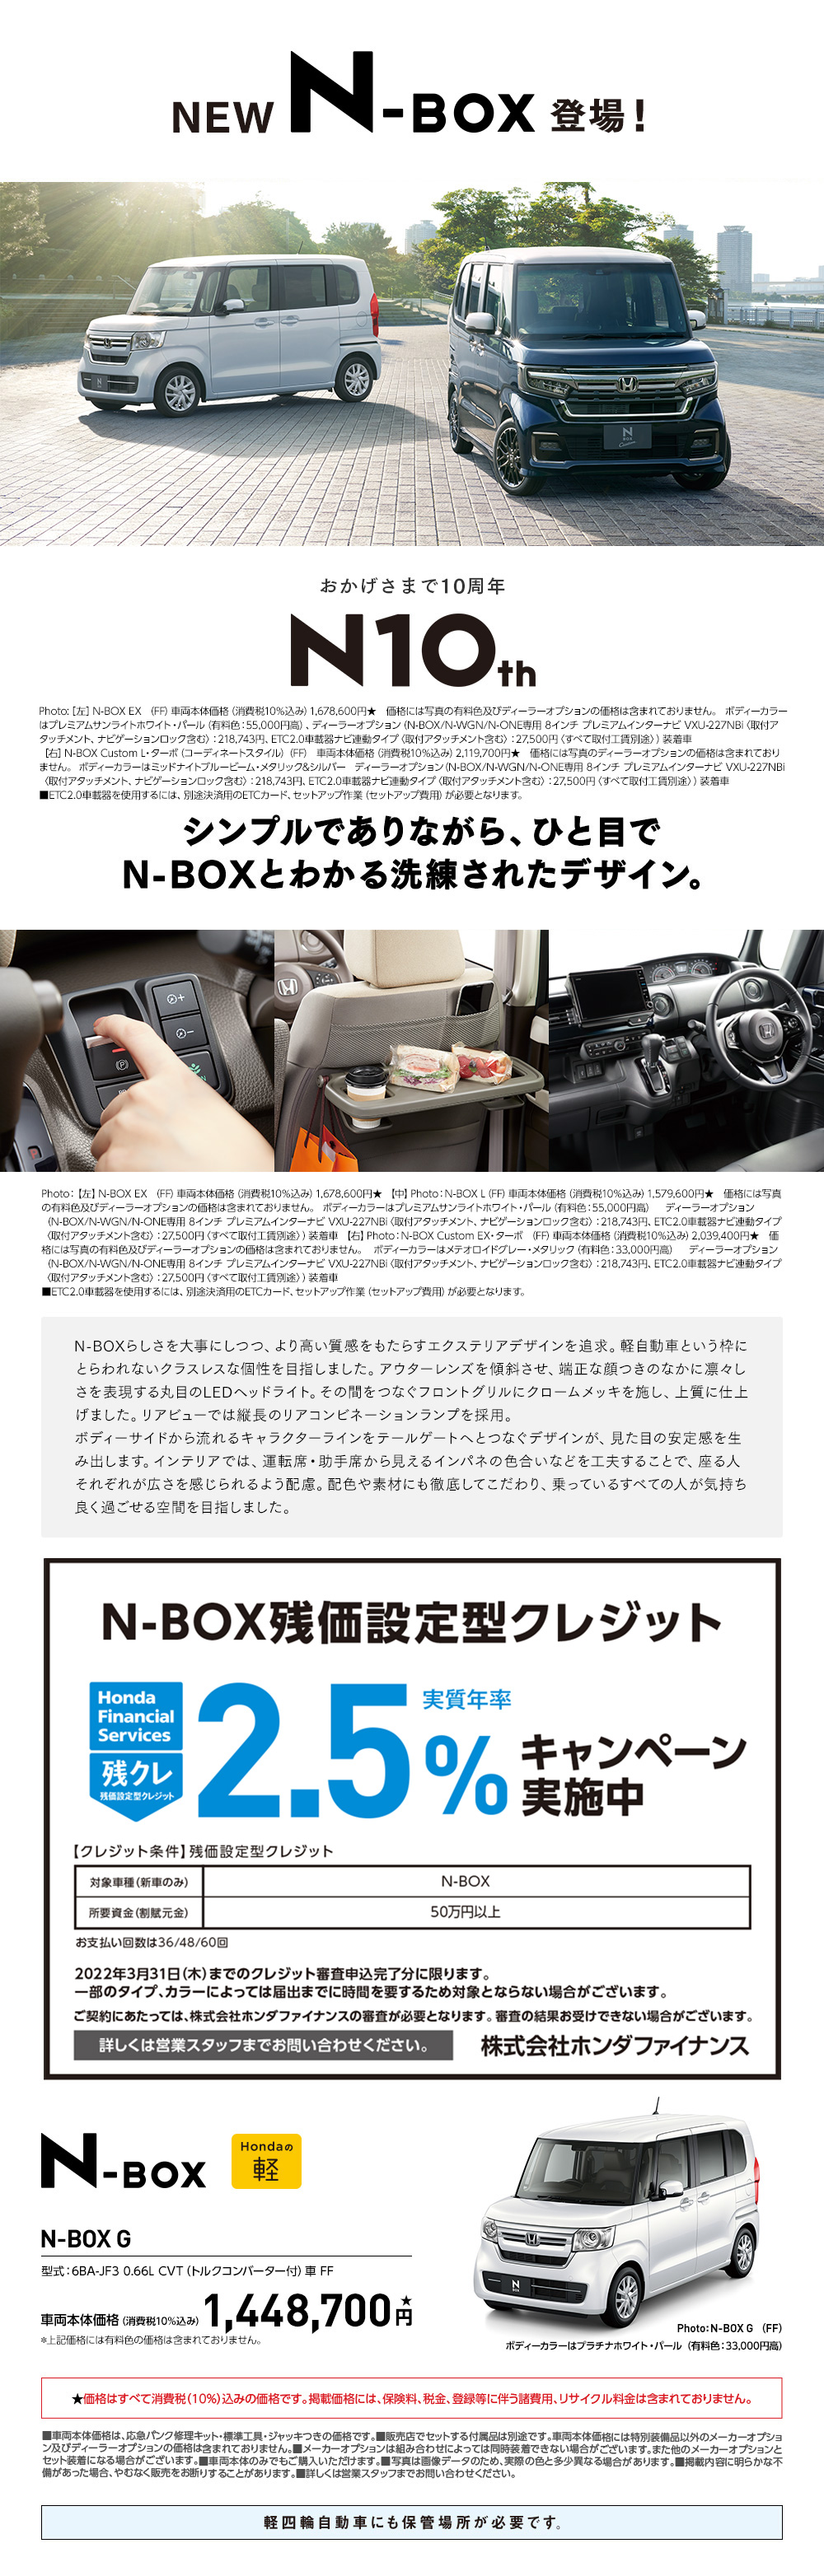 おすすめキャンペーン キャンペーン Honda Cars 東京